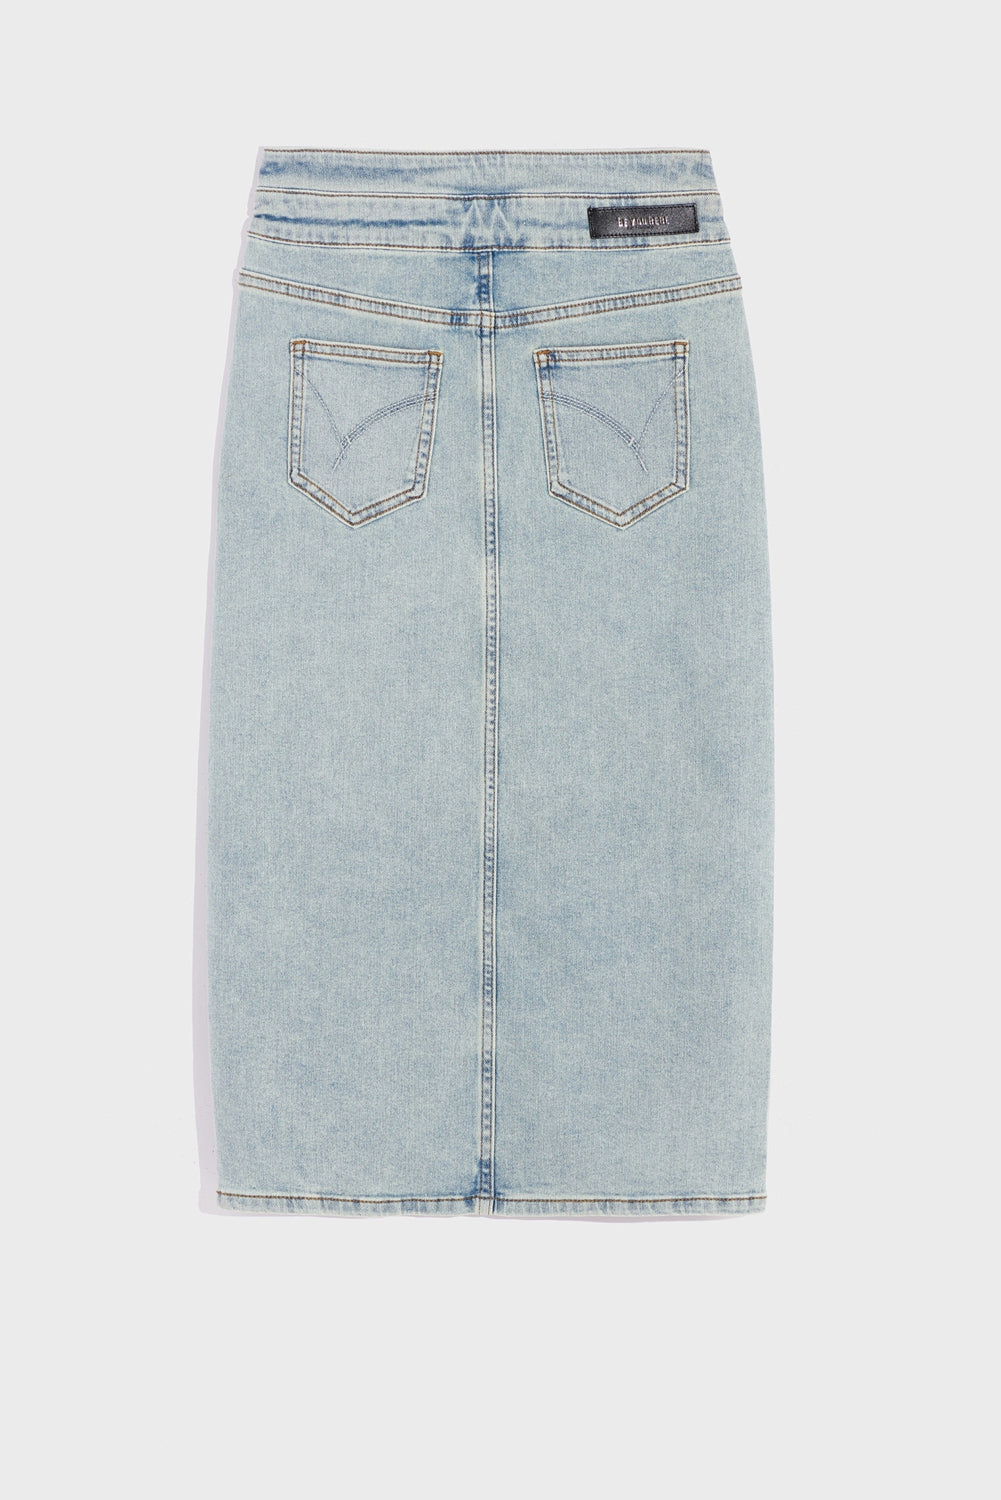 Light Blue Knee-Length Skirt With Center Slit